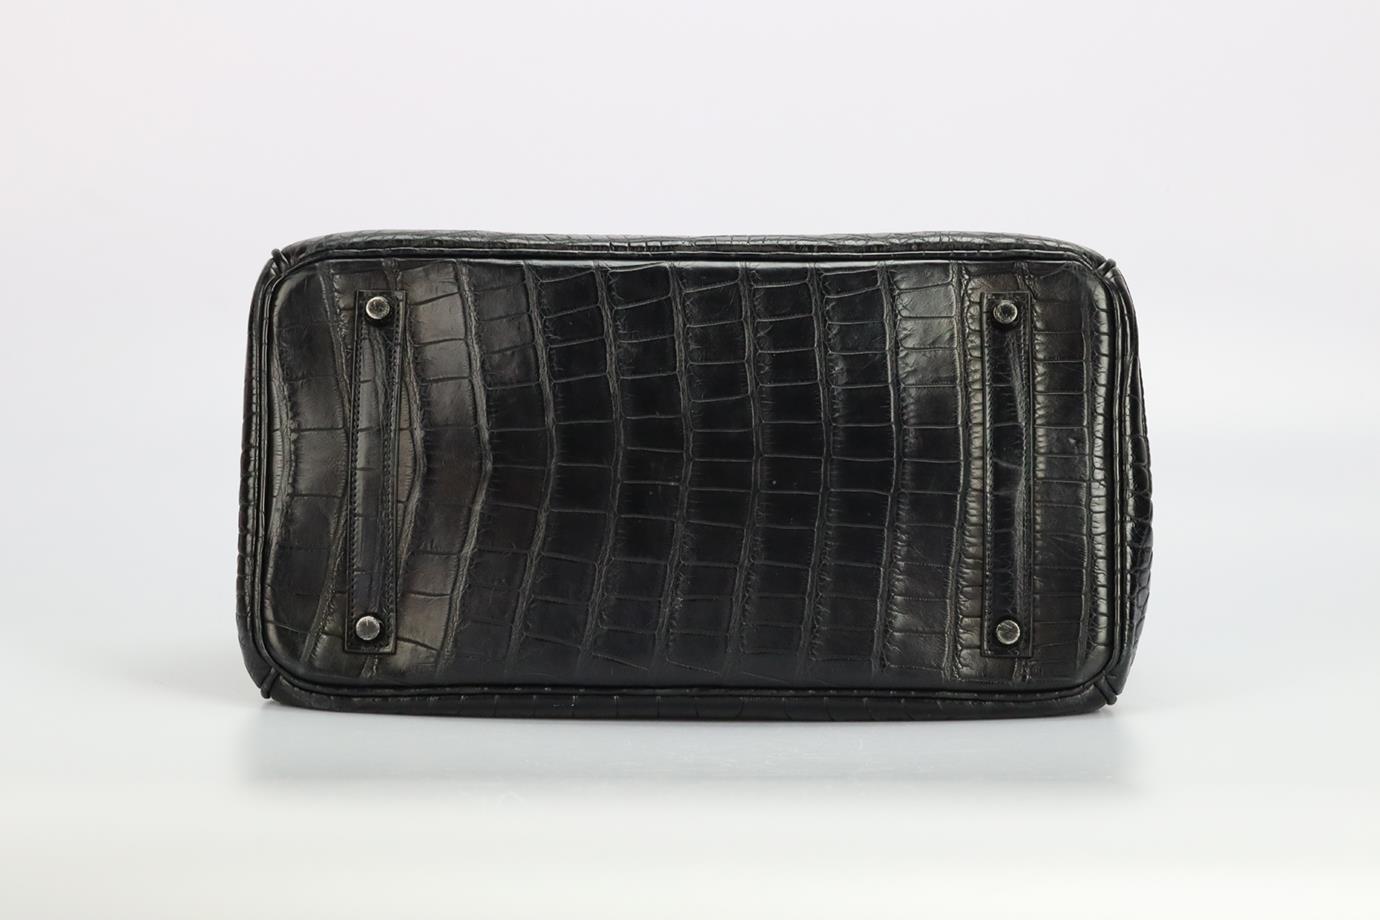 Hermès 2010 Birkin 35cm So Black Matte Alligator Bag For Sale 3